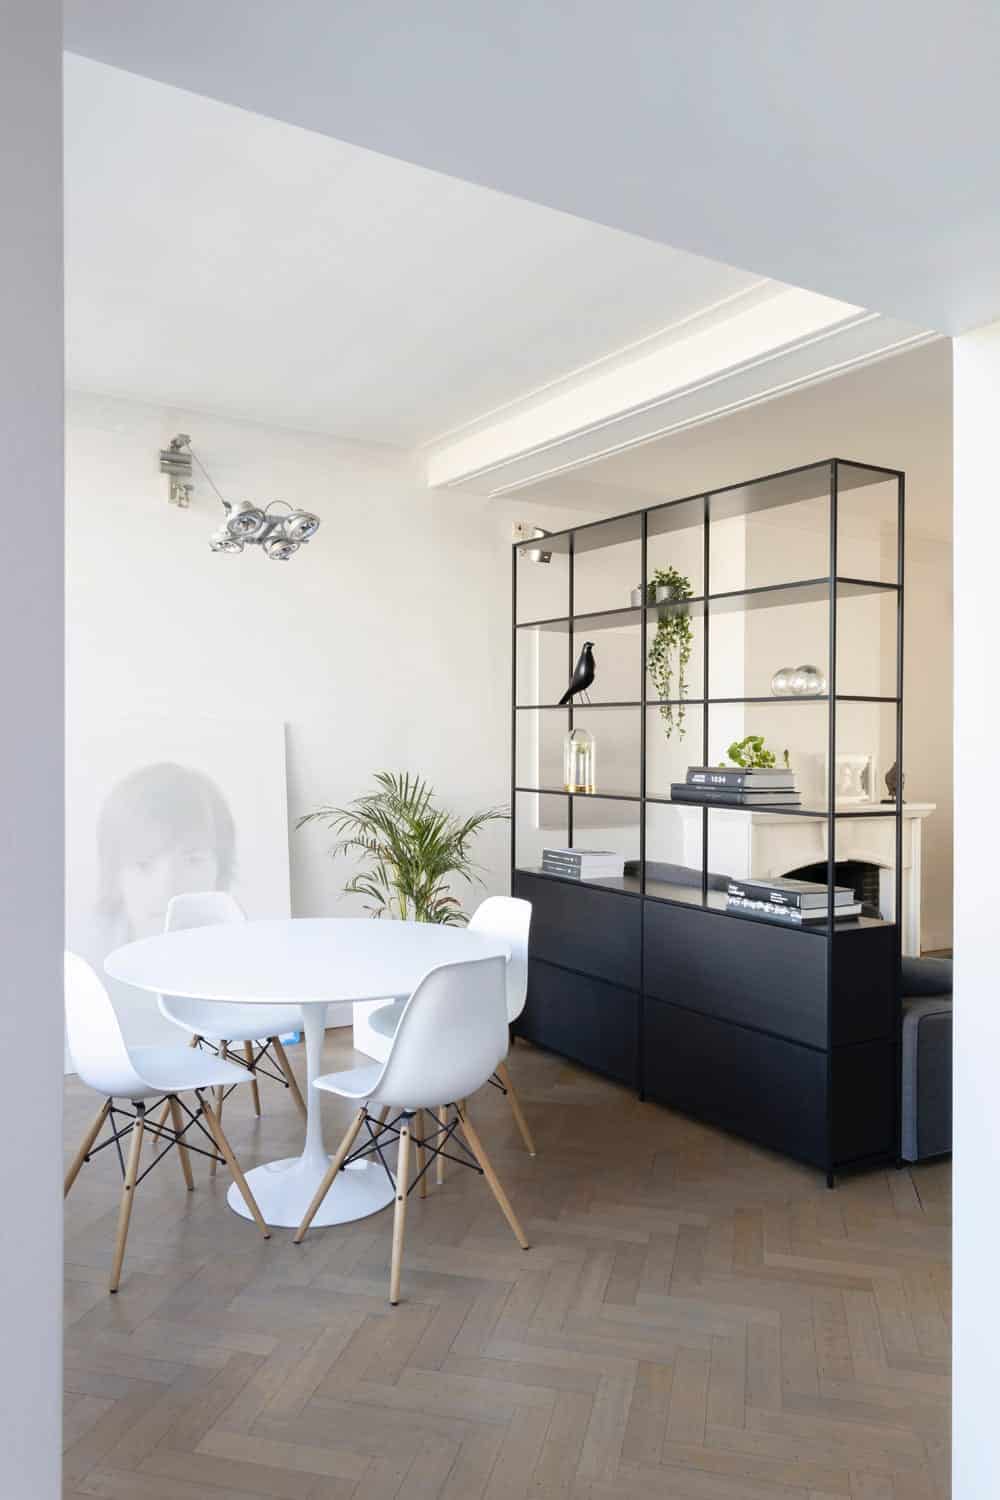 Esszimmer mit Stühlen im Stile Eames, Foto: Jean-Philippe Delberghe / Unsplash